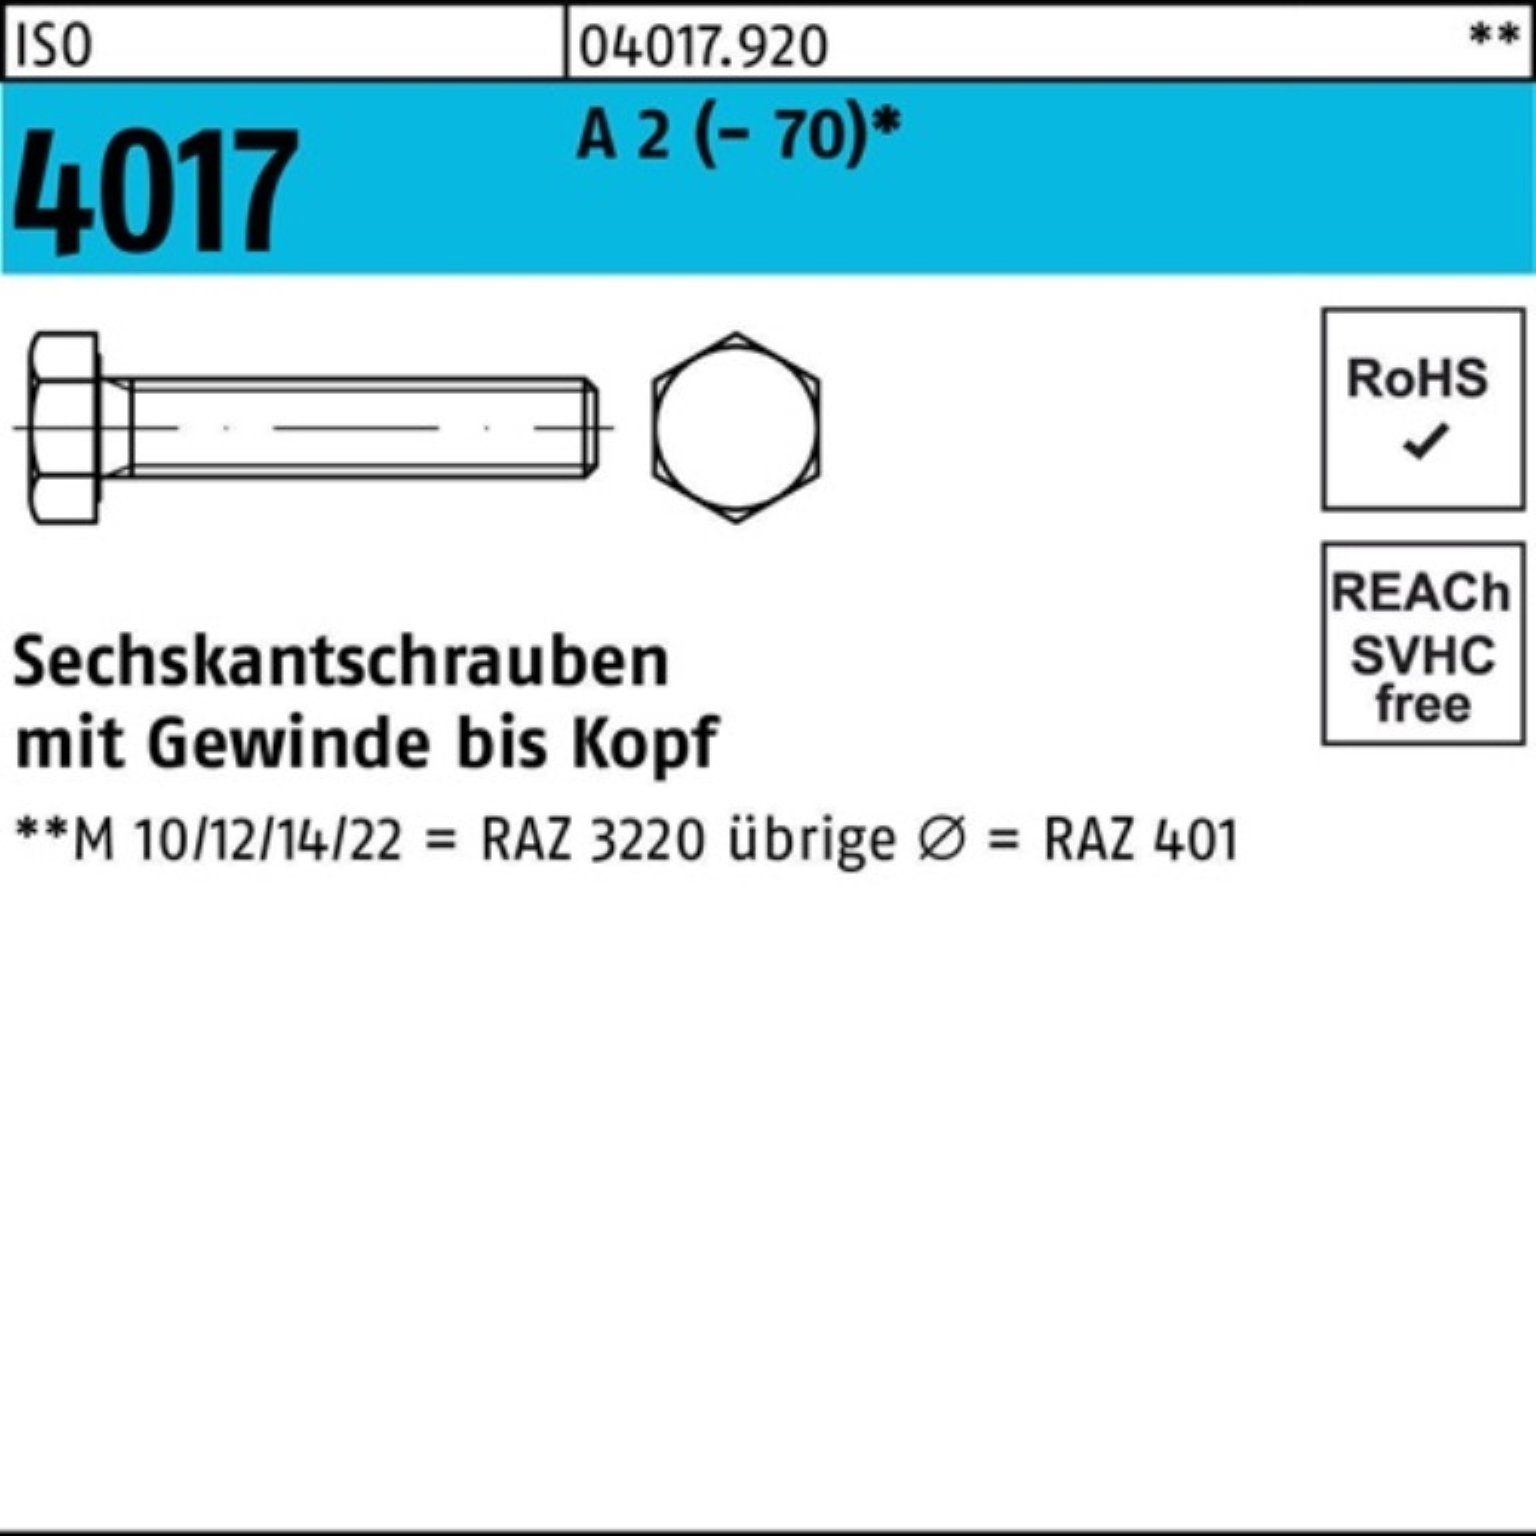 Bufab Sechskantschraube 100er Pack Sechskantschraube ISO 4017 VG M14x 75 A 2 (70) 50 Stück